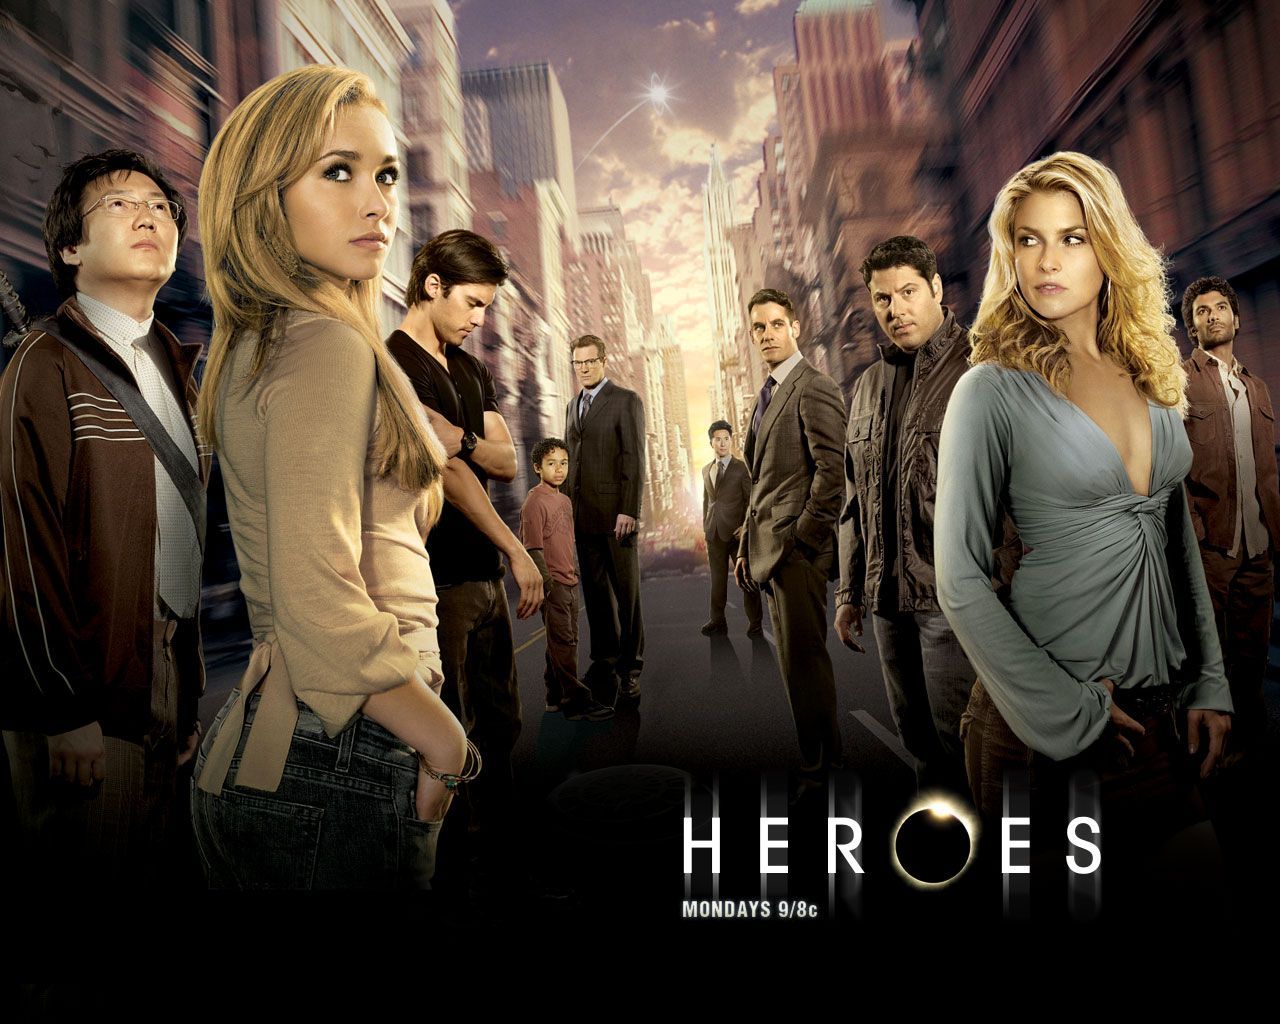 Heroes TV Series wallpapers | CELEBWALLPIX